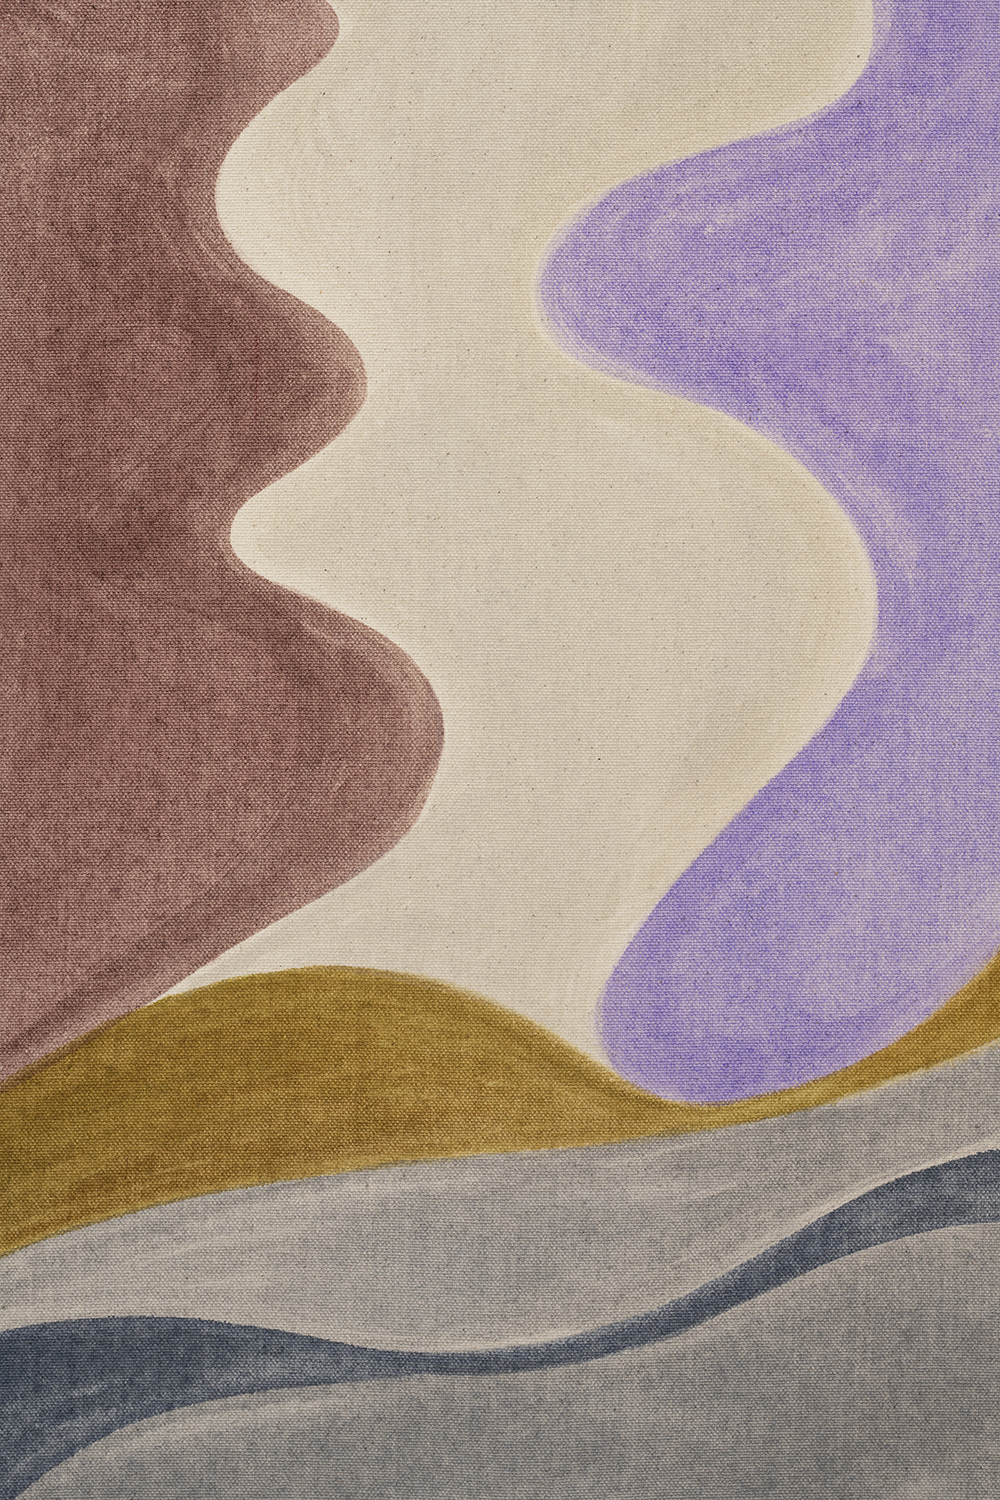 Vinna Begin, "Field Dance" (detail), 2023 (Pigment on canvas, 76 x 91,5 cm).